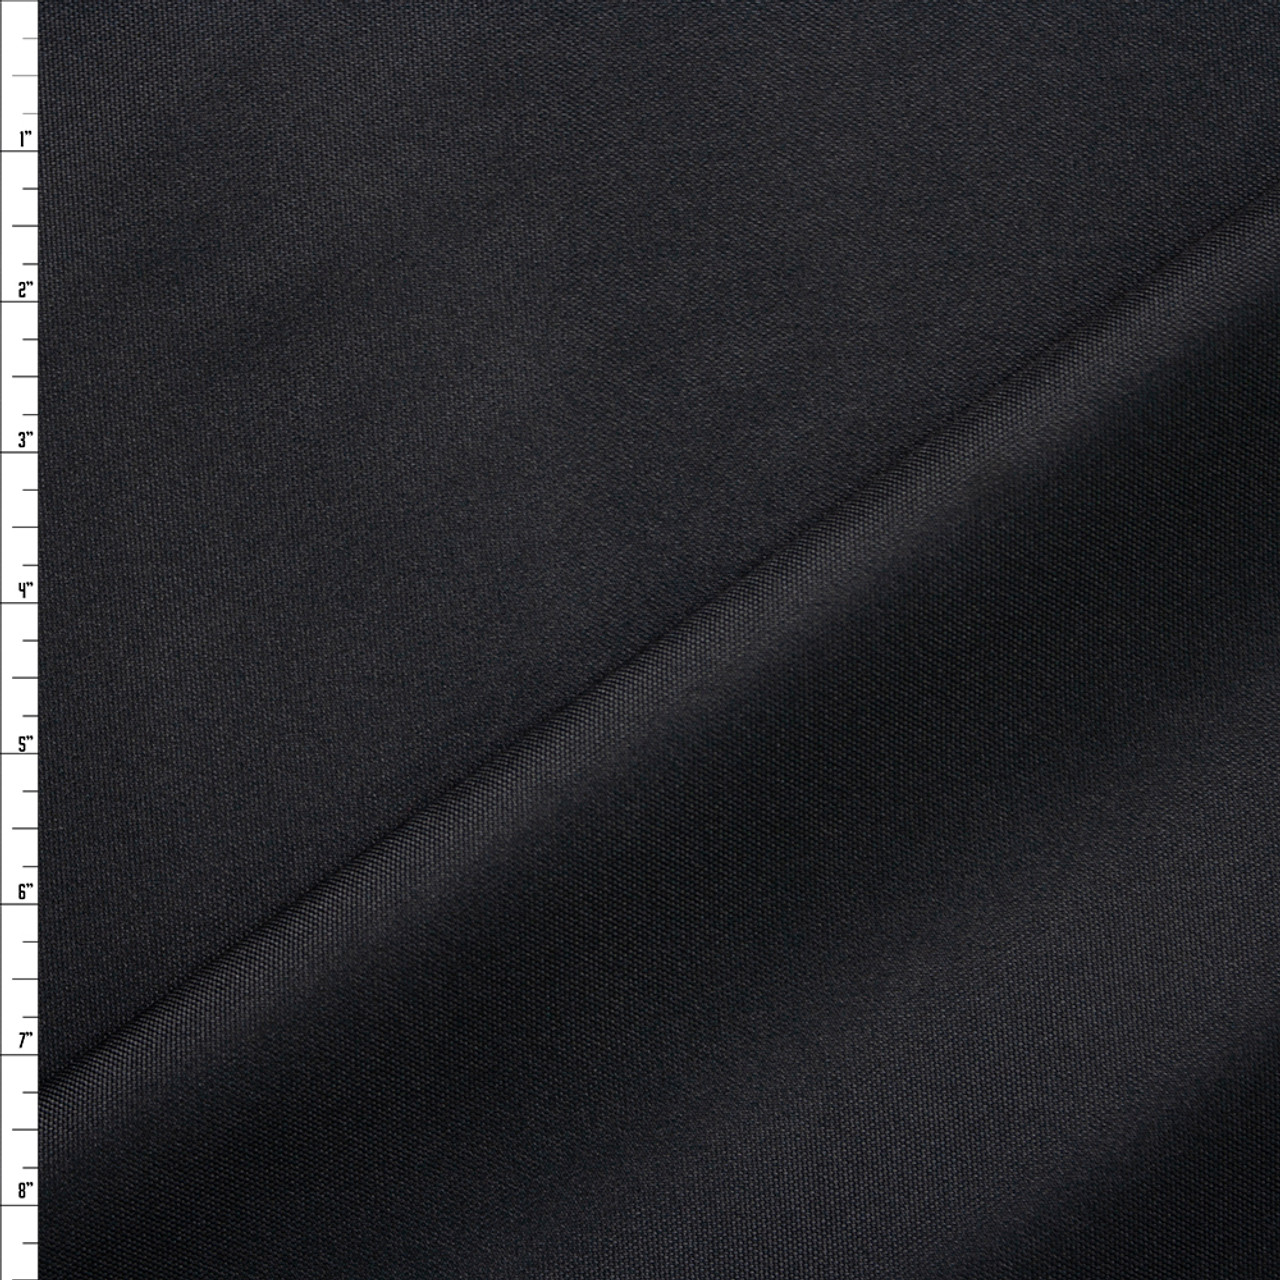 Heavy Duty Nylon Canvas Black, Heavyweight Canvas Fabric